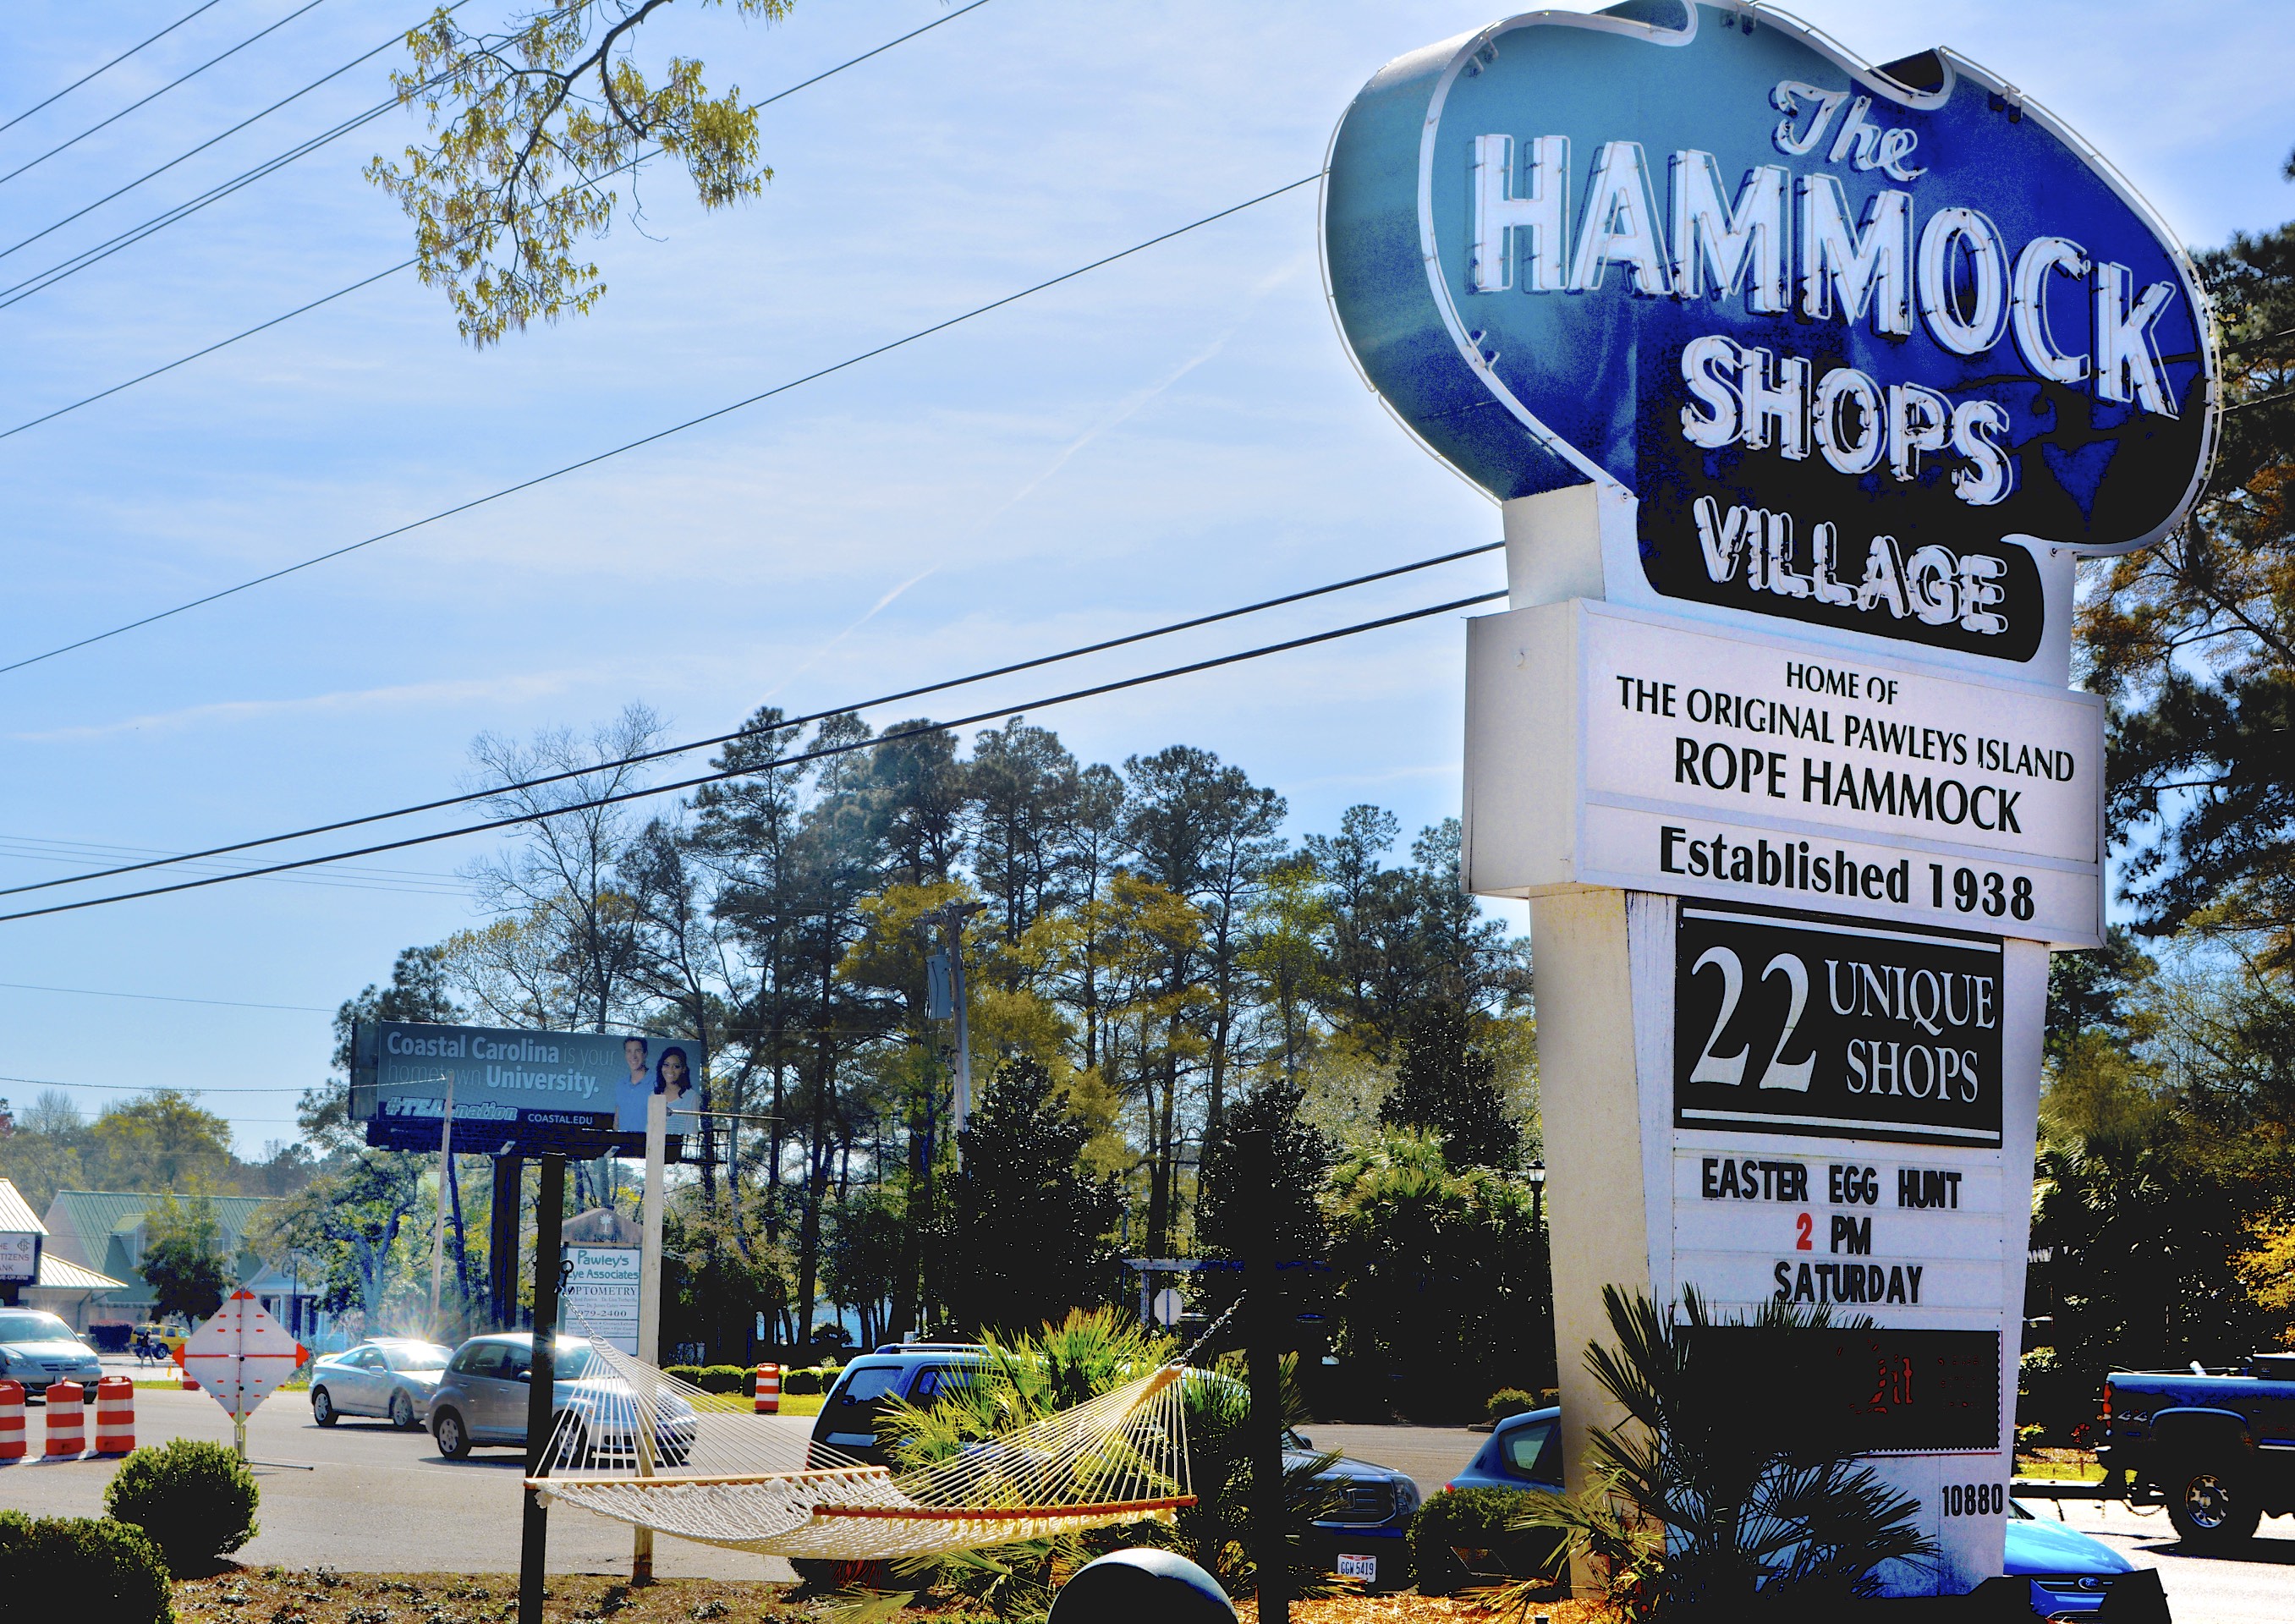 Hammock Shops Village